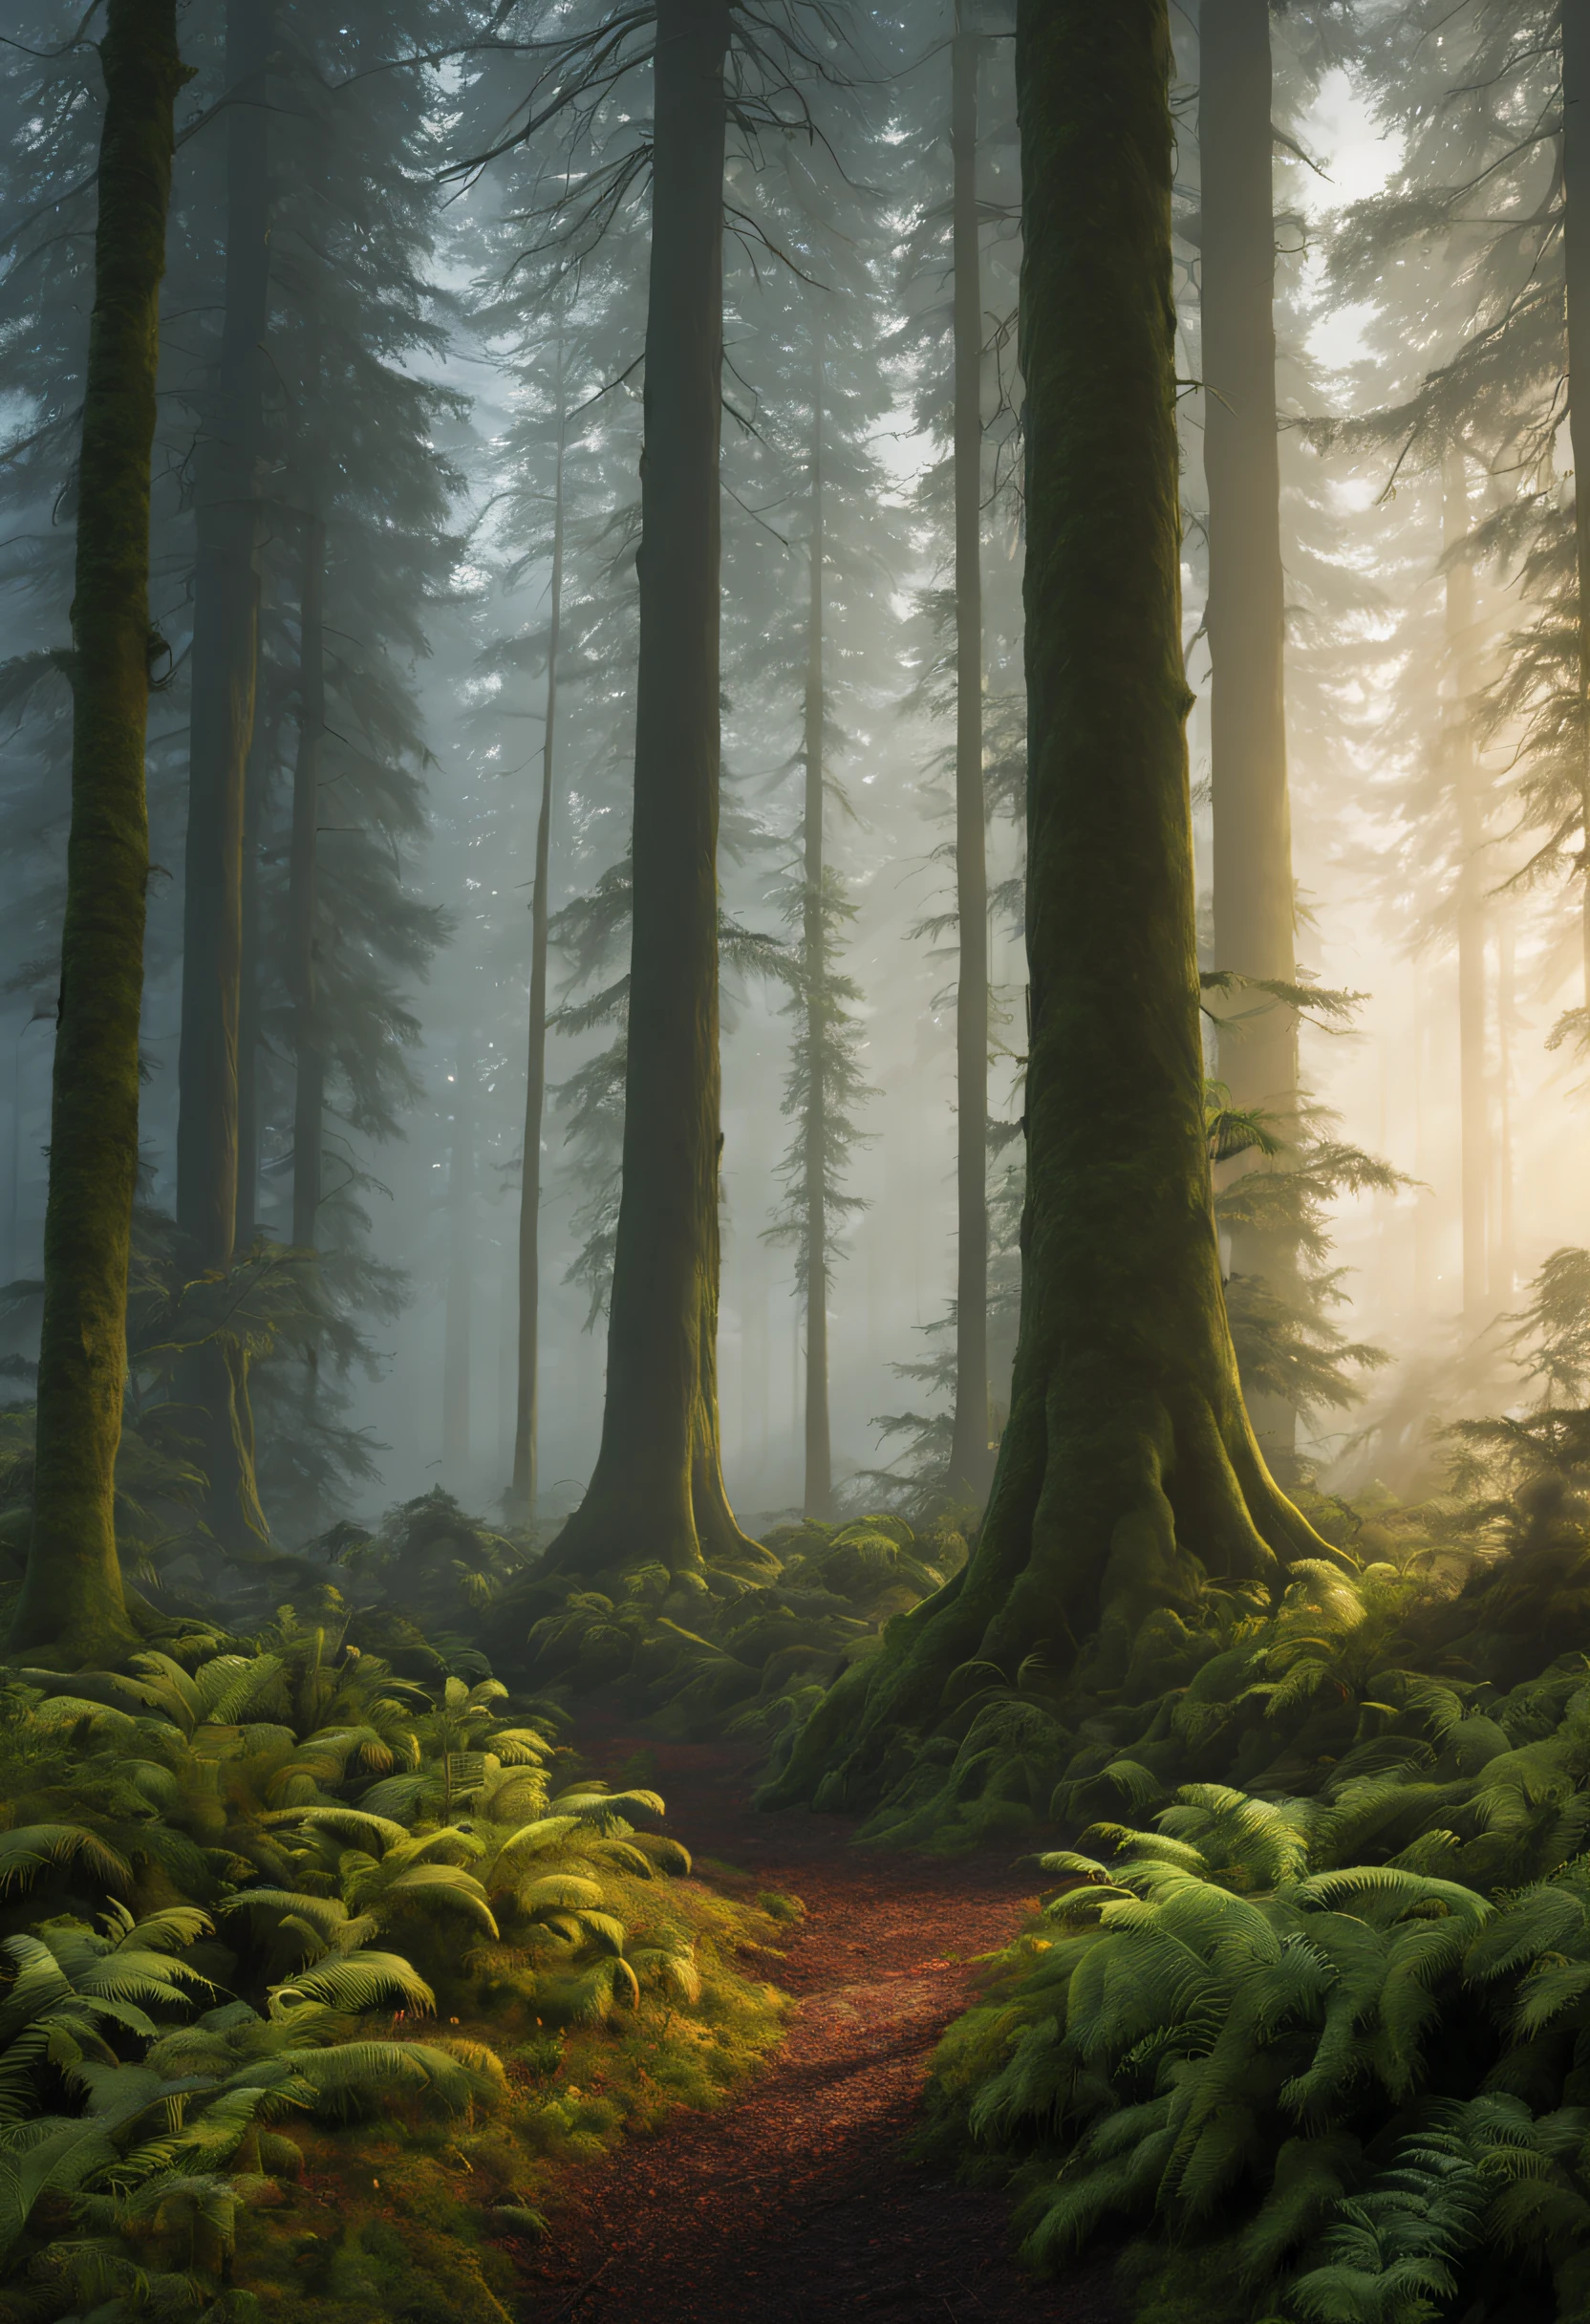 (最好的质量,4K,8千,高分辨率,杰作:1.2),极其详细,(实际的,photo实际的,photo-实际的:1.37),黎明时分的迷雾森林,高大的树木伸向天空,远处山丘上的第一道曙光,苔藓和蕨类植物覆盖着森林地面,雾气在树干间飘荡,天然材料,柔软的,微妙的颜色,柔和的阳光透过森林树冠照射进来,和平的气氛